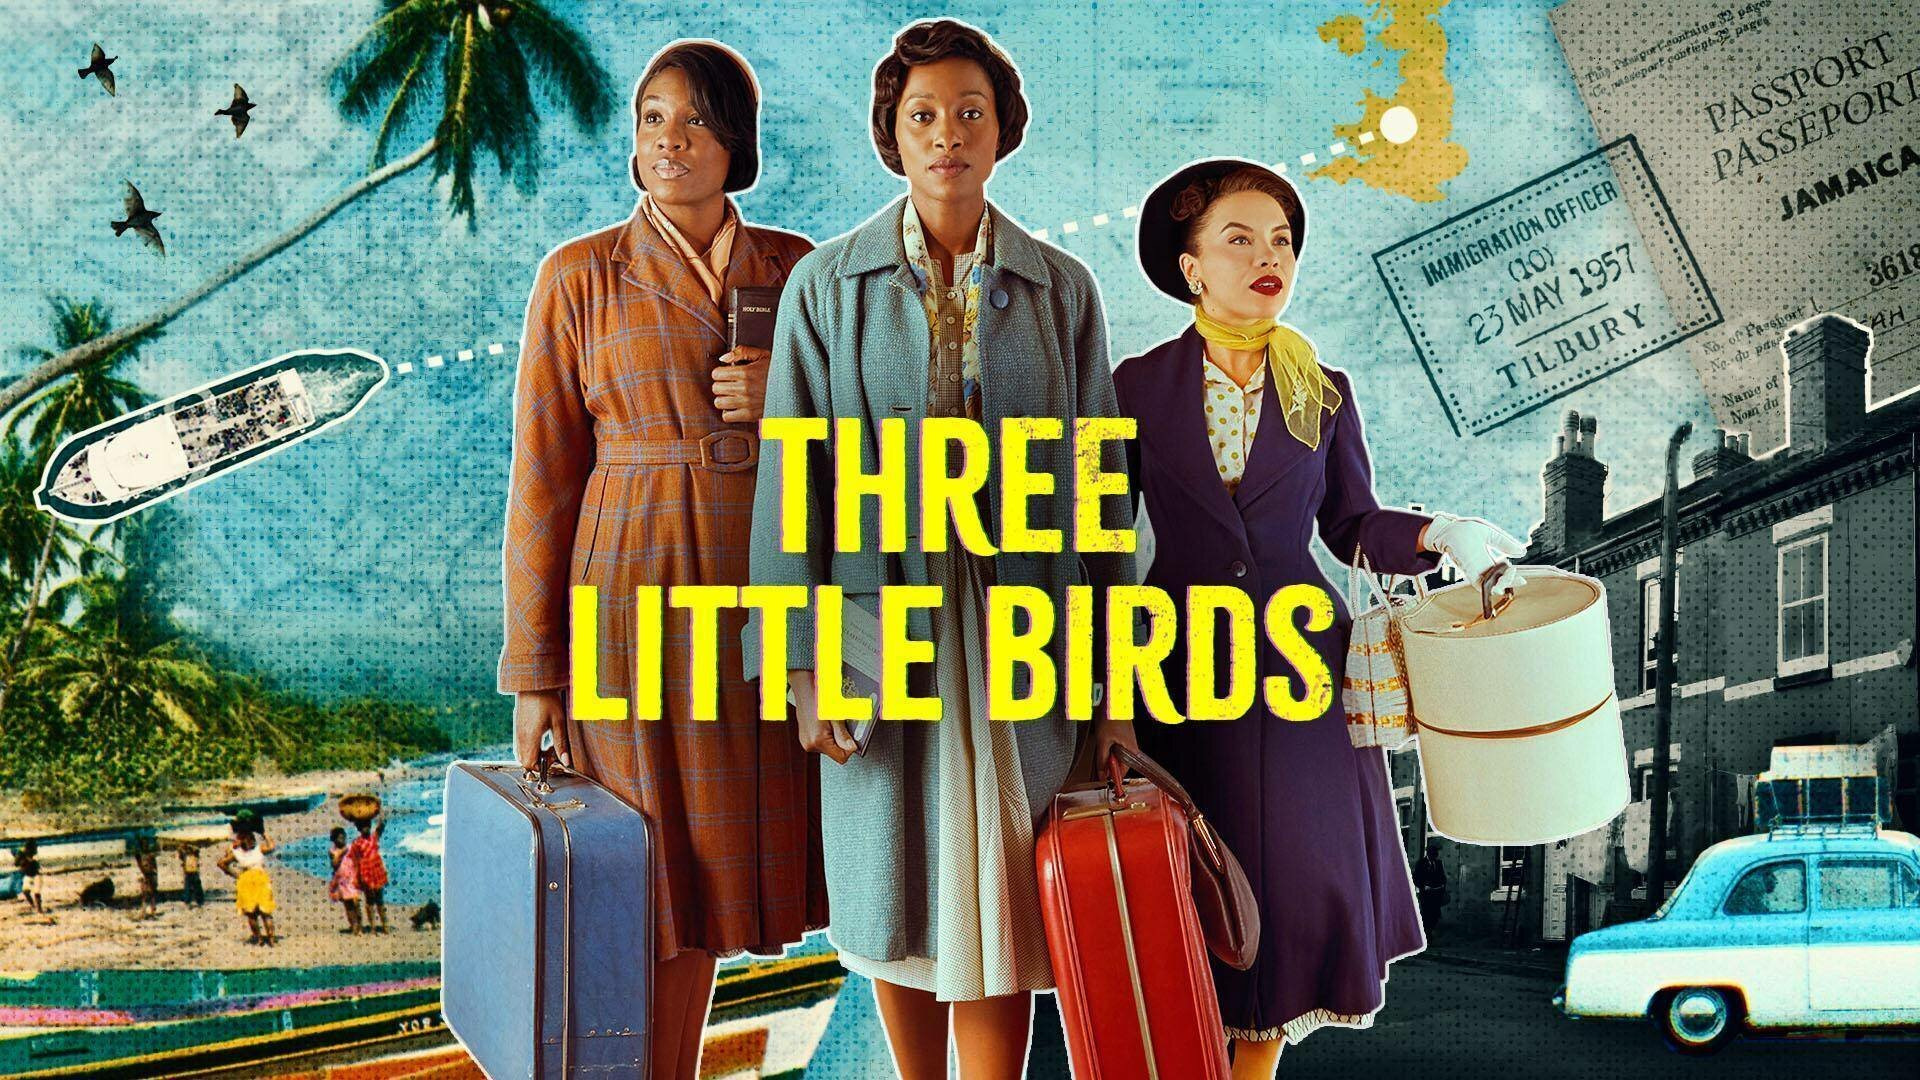 Show Three Little Birds